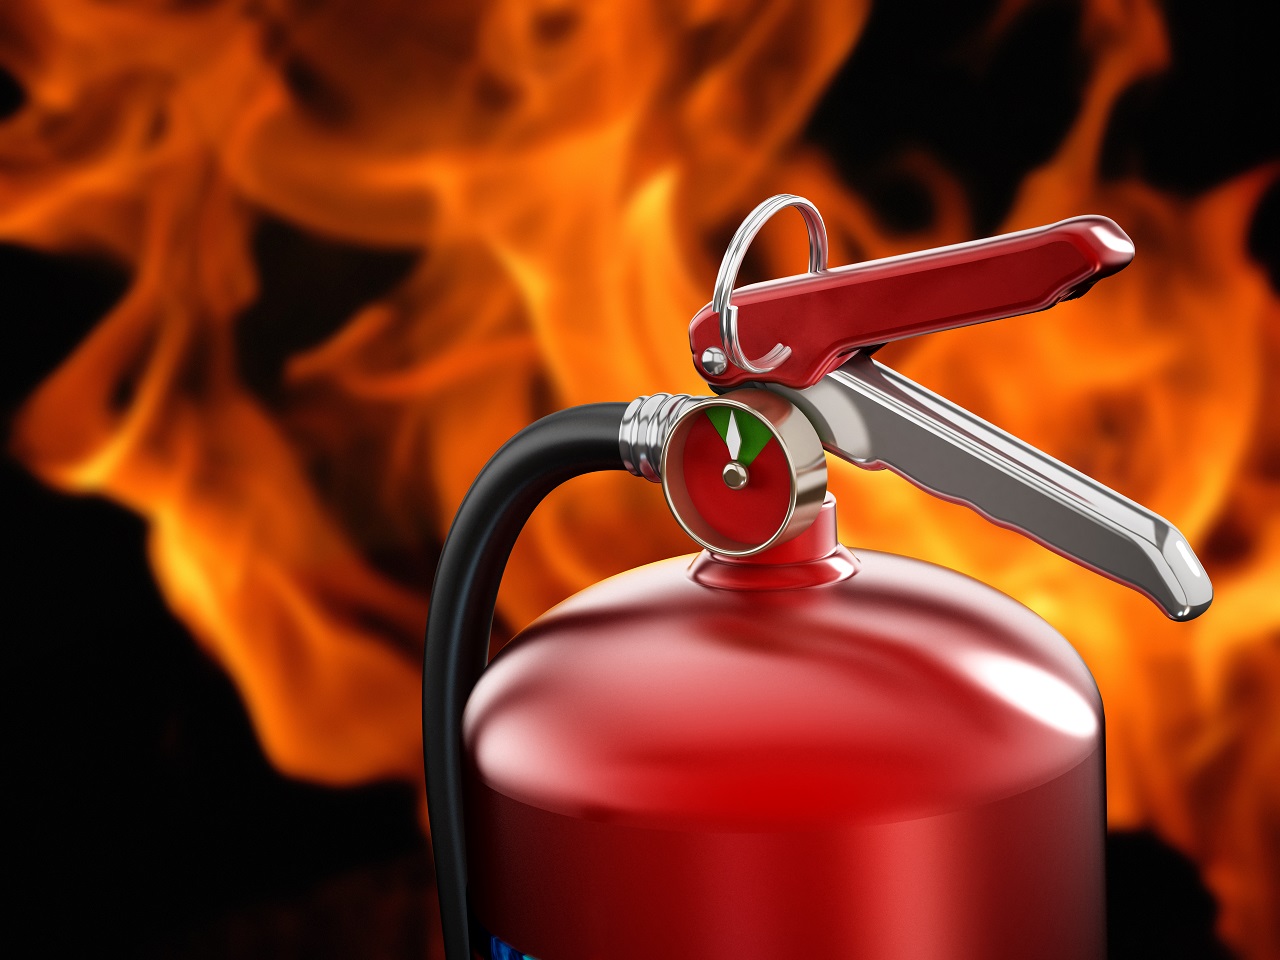 Formation extincteur: utilisation des extincteurs en sécurité en cas d' incendie